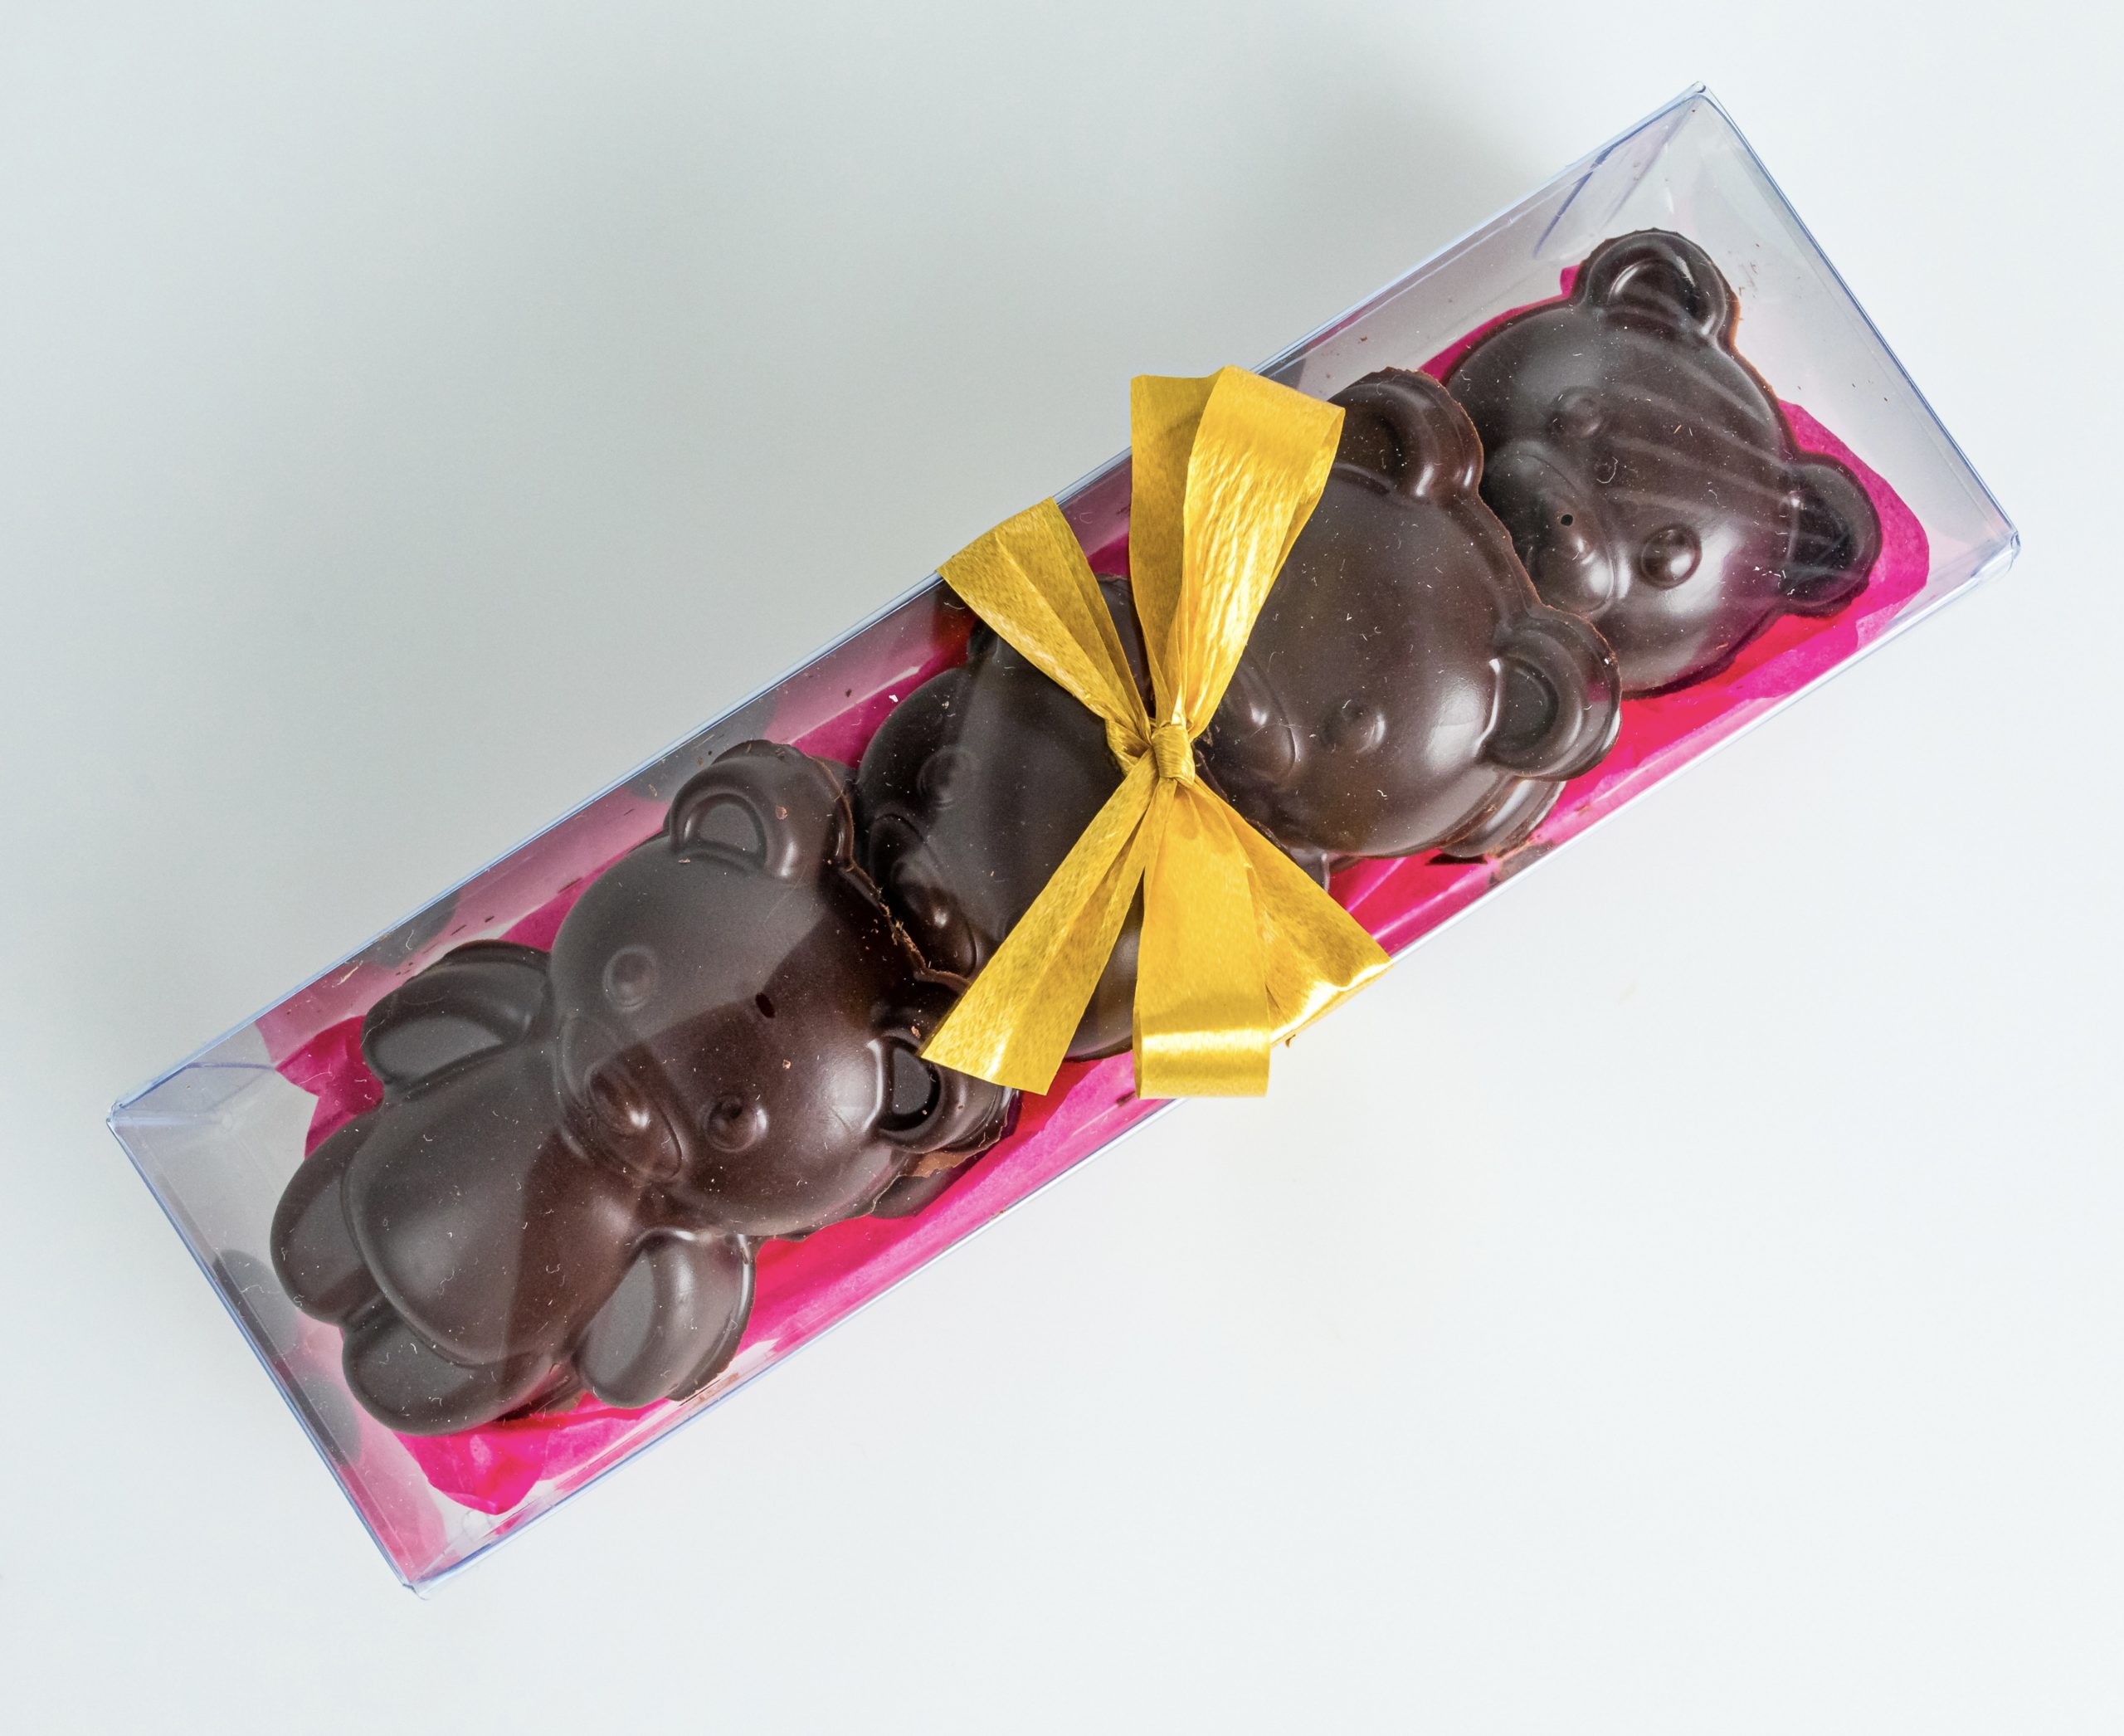 L'ourson guimauve enrobé chocolat : un goût d'enfance - Maison Galland  Saint Malo intra muros